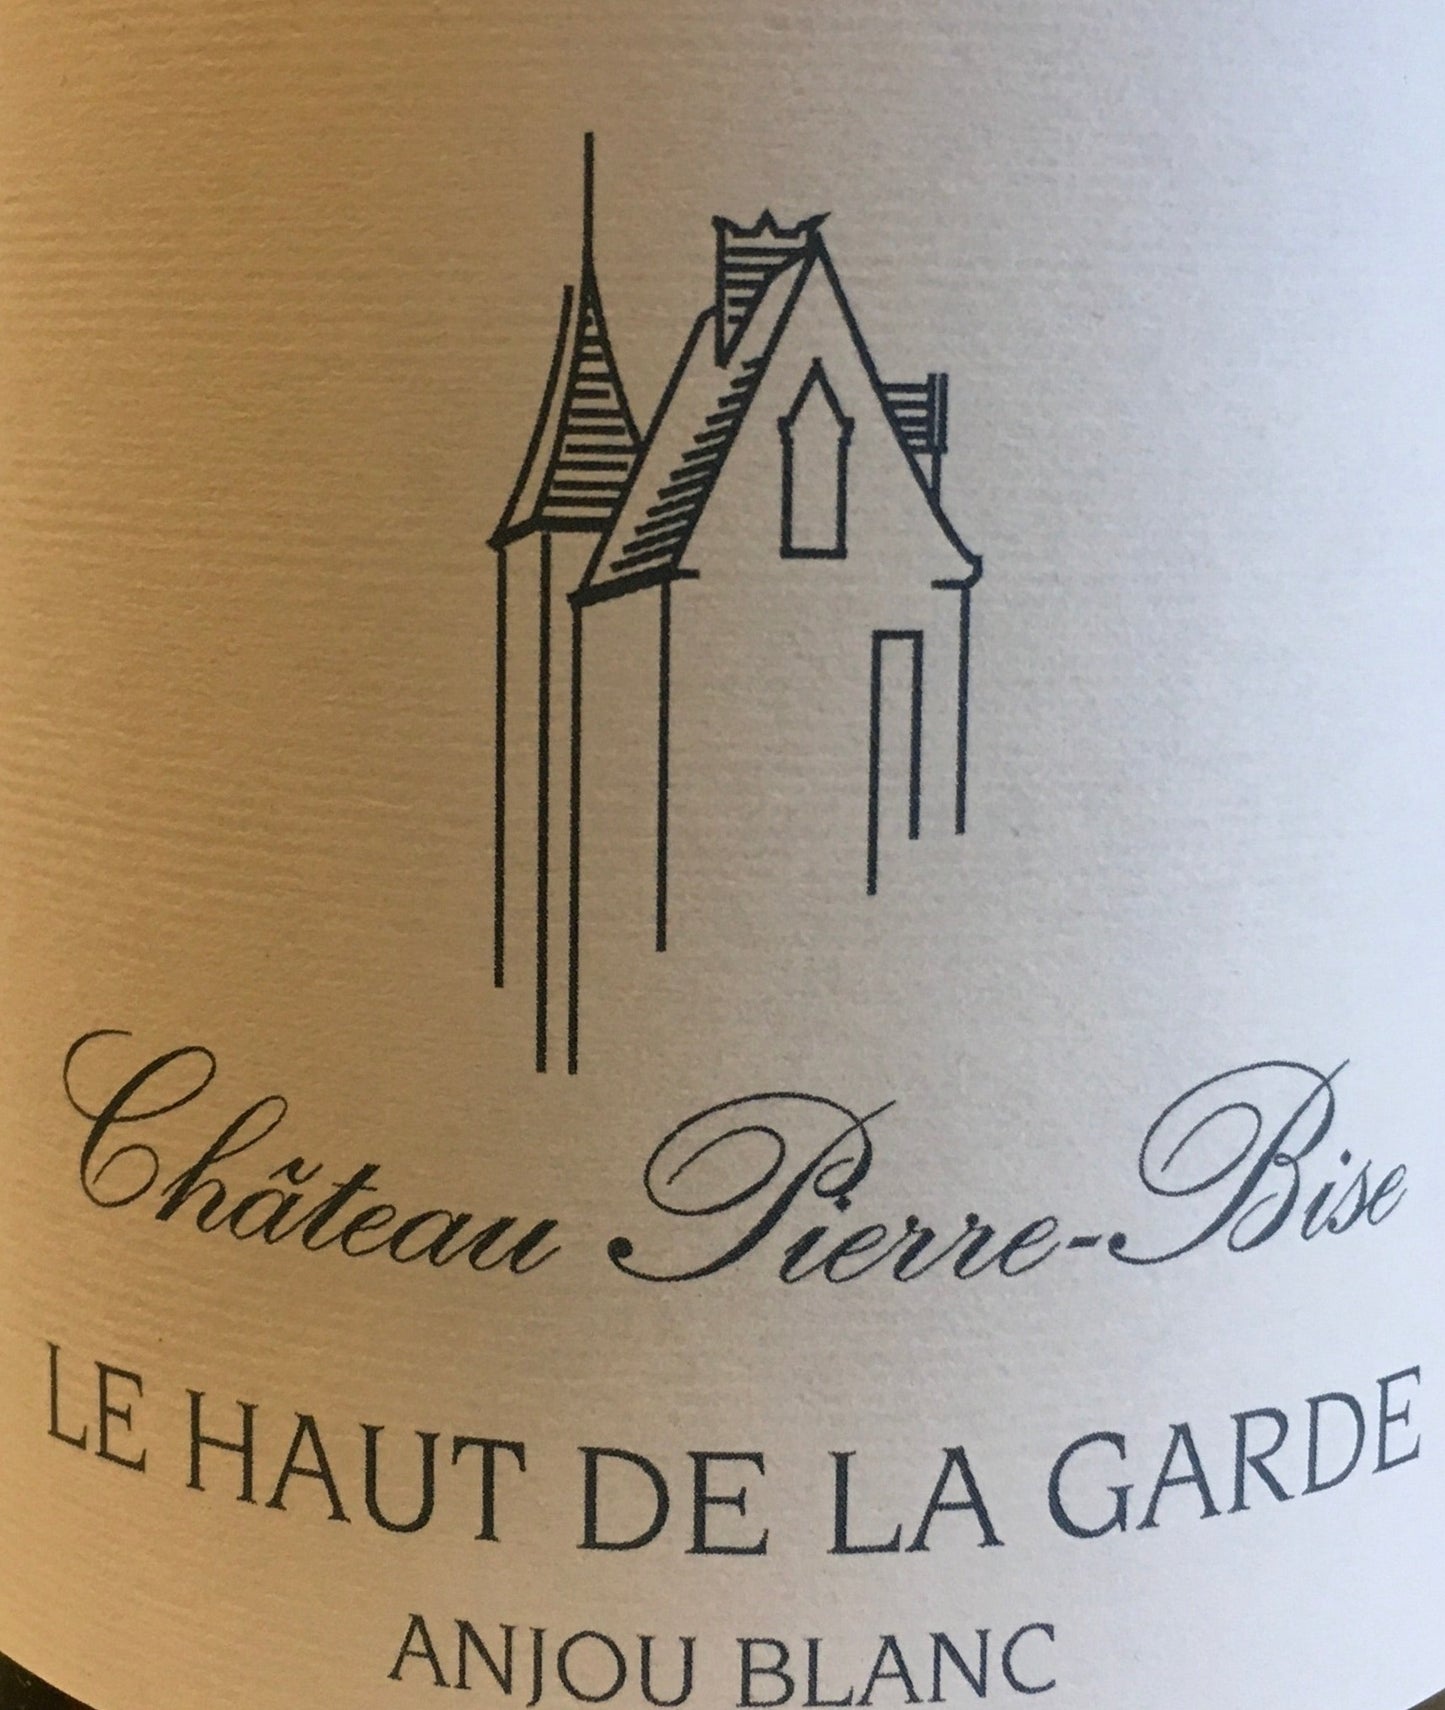 Chateau Pierre-Bise 'Le Haut De La Garde' - Anjou Blanc